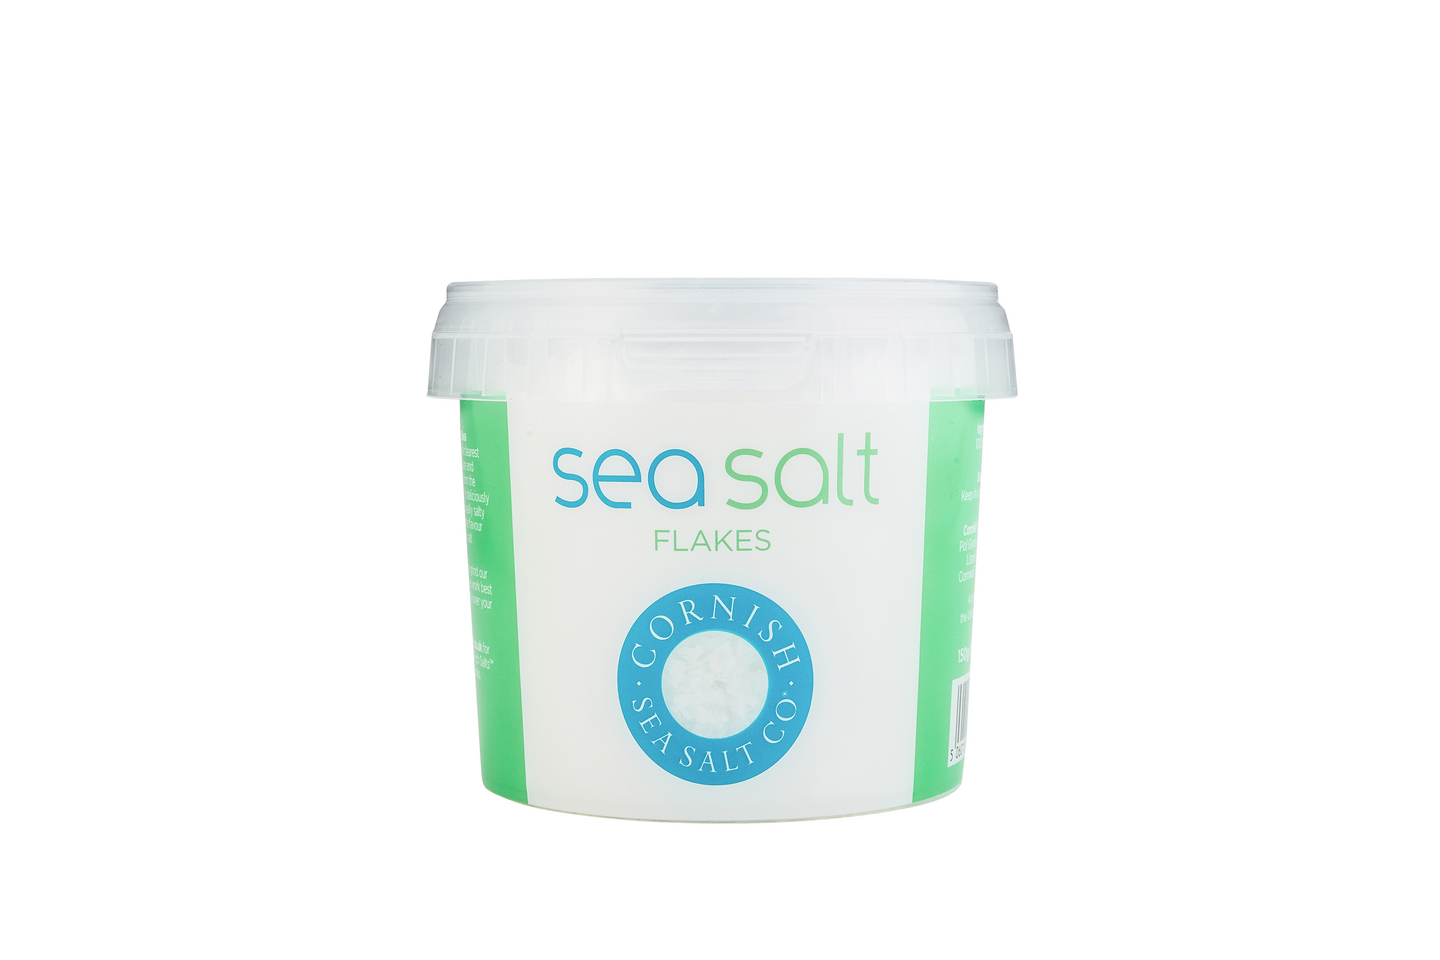 Cornish sea salt co ltd. Merisuolahiutaleita 150 g